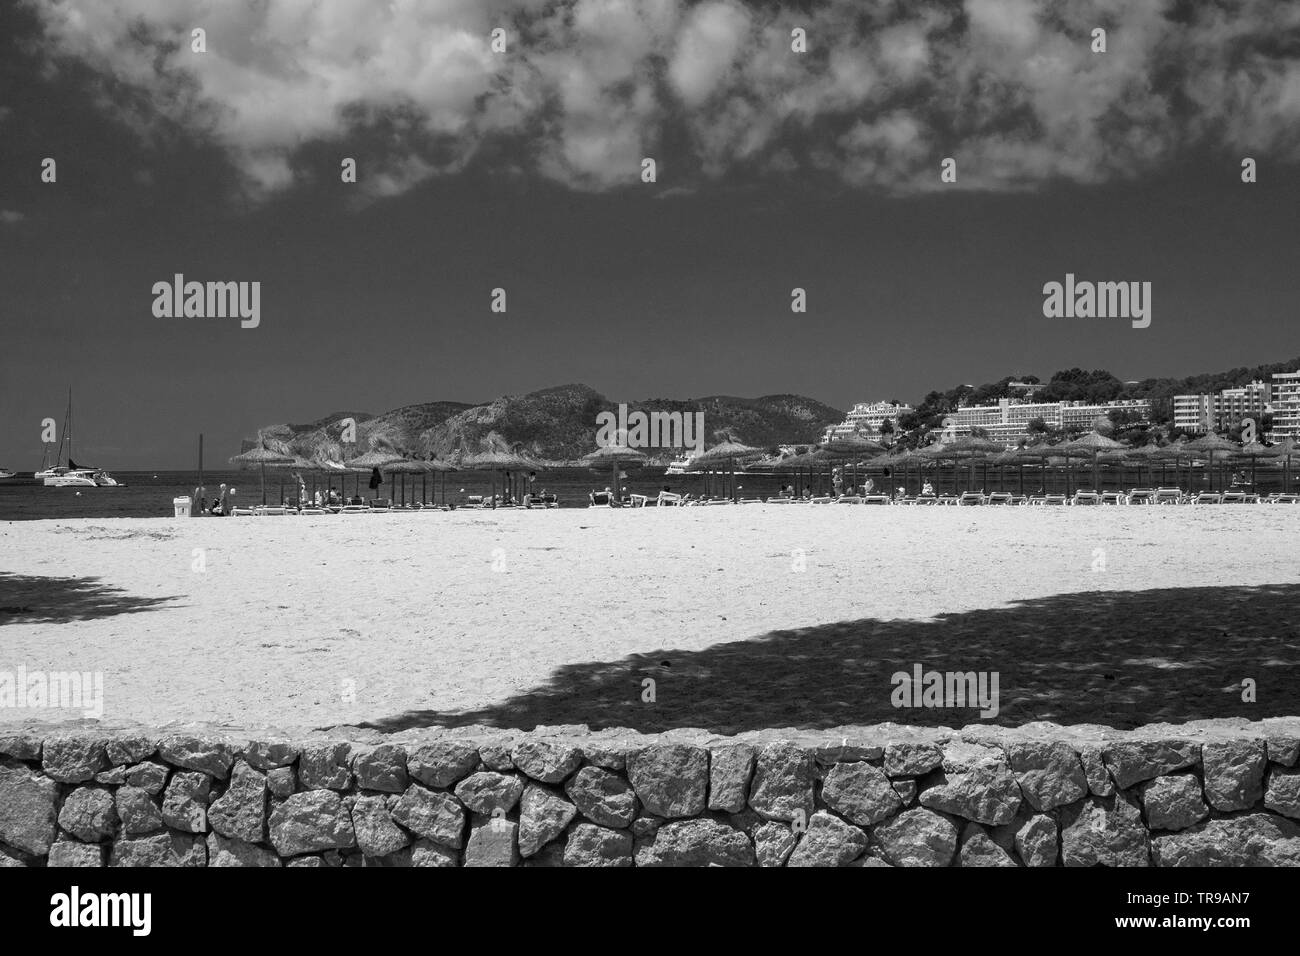 SANTA PONSA, MALLORCA, Spagna - 29 Maggio 2019: spiaggia di sabbia in una giornata di sole con persone Maggio 29, 2019 in Santa Ponsa, Mallorca, Spagna. Foto Stock